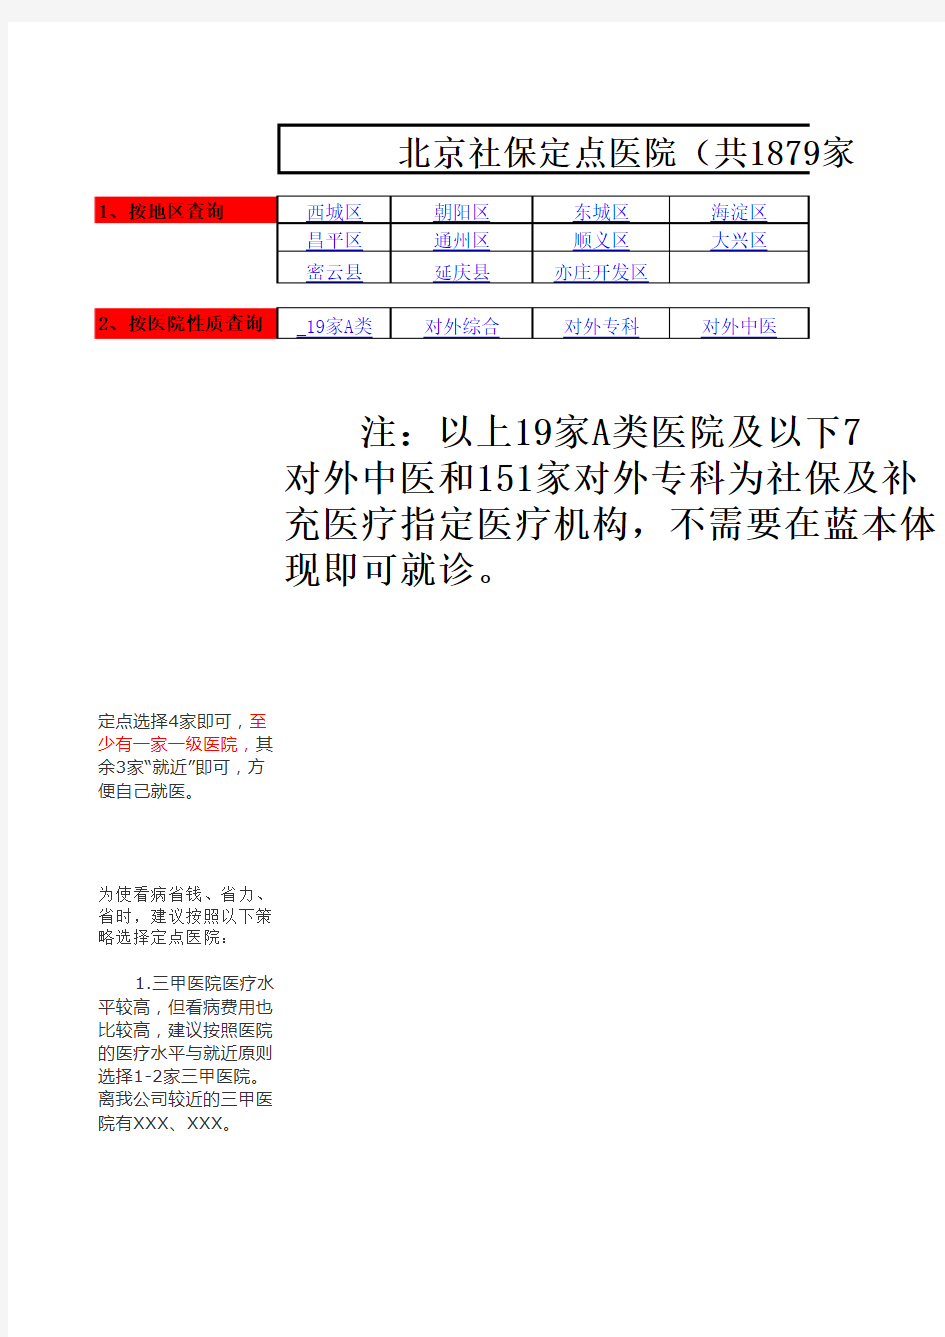 最新版北京定点医疗机构名单